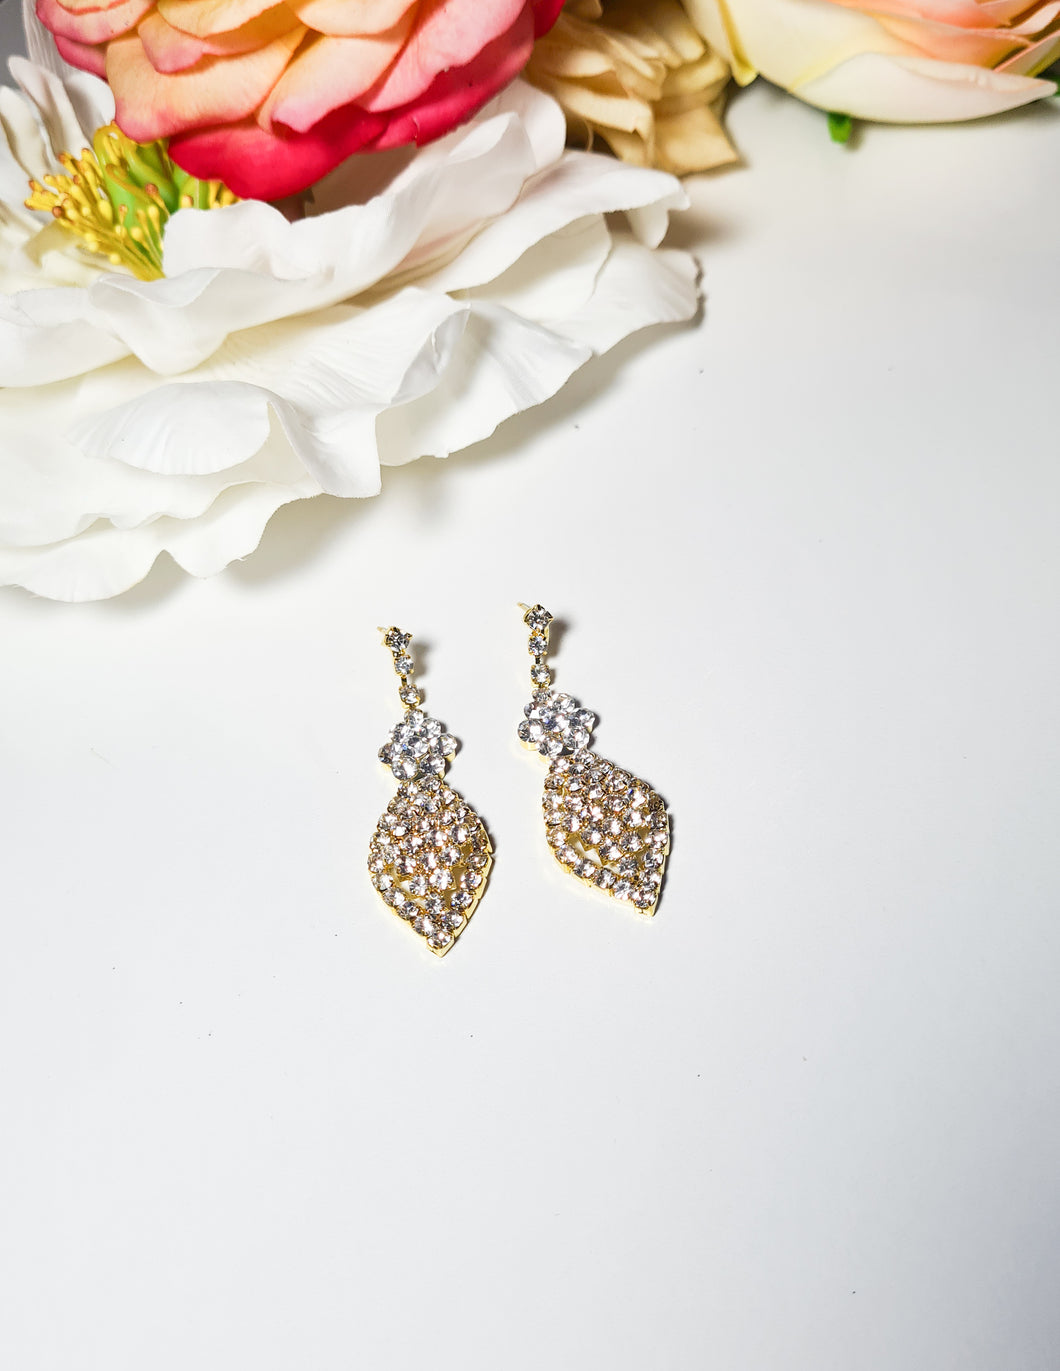 The Regal Deana earrings